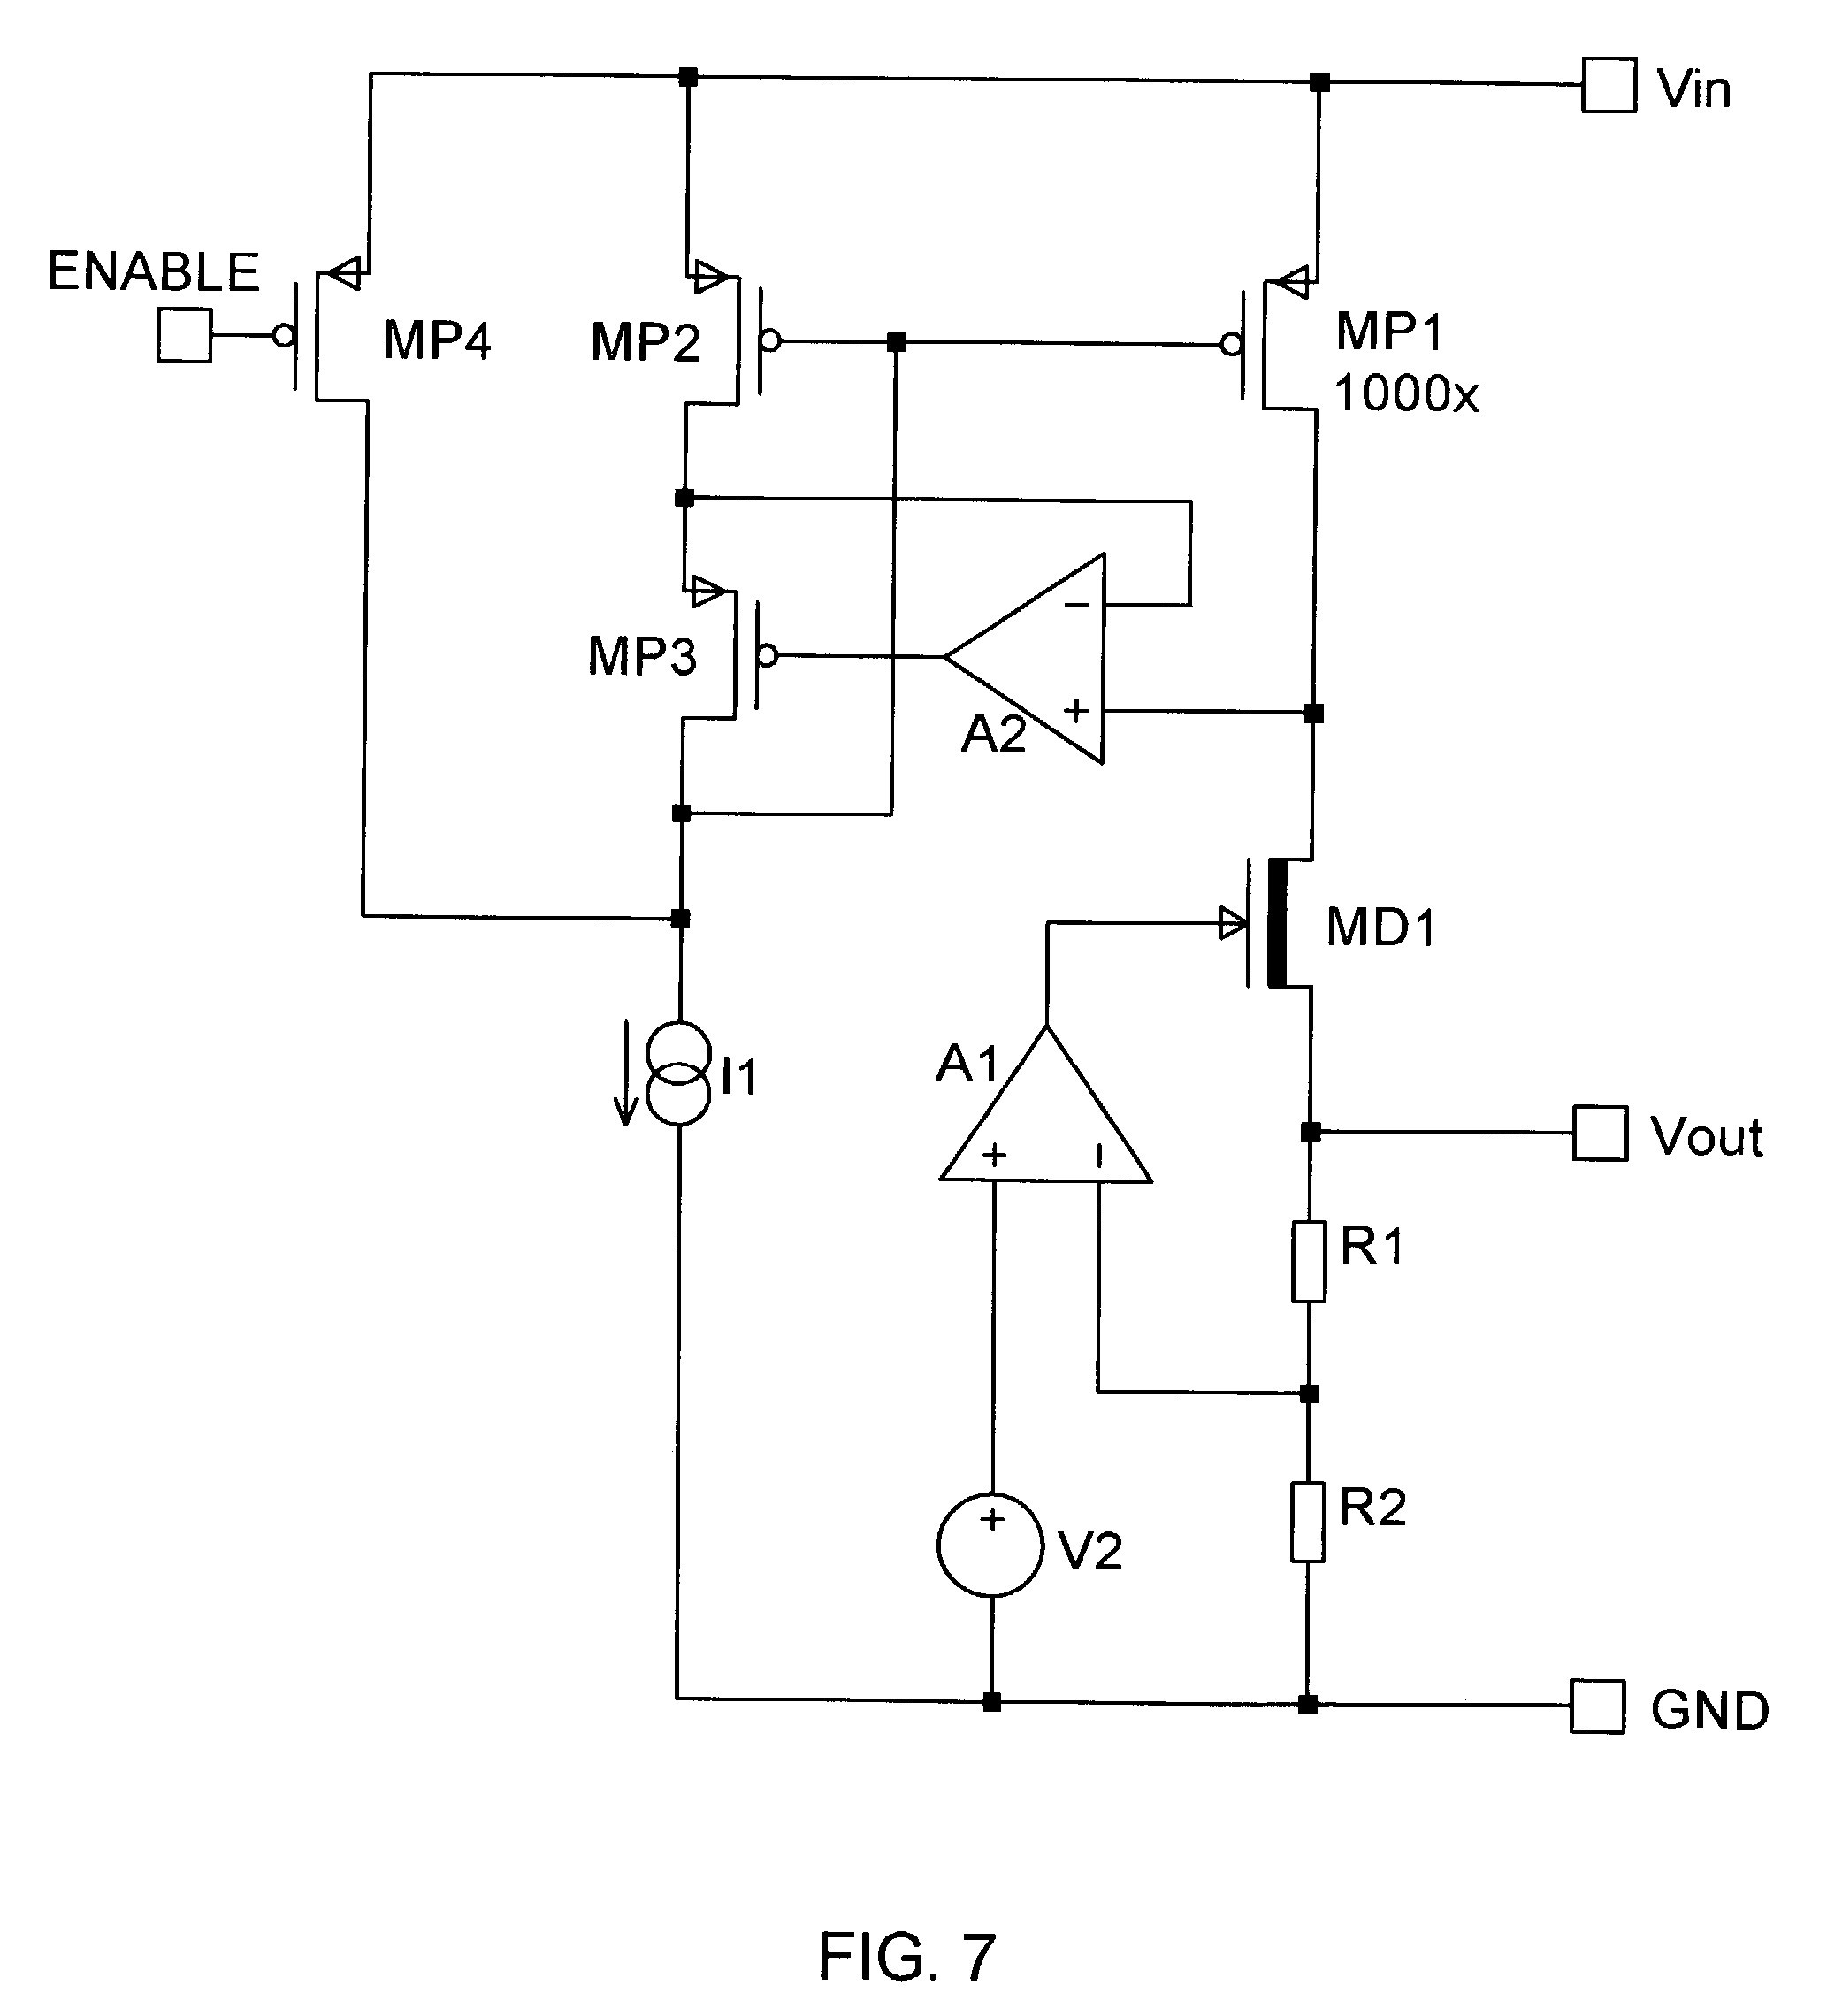 Generator Regulator Wiring Diagram Inspirationa 12 Volt Generator Voltage Regulator Wiring Diagram Awesome Voltage